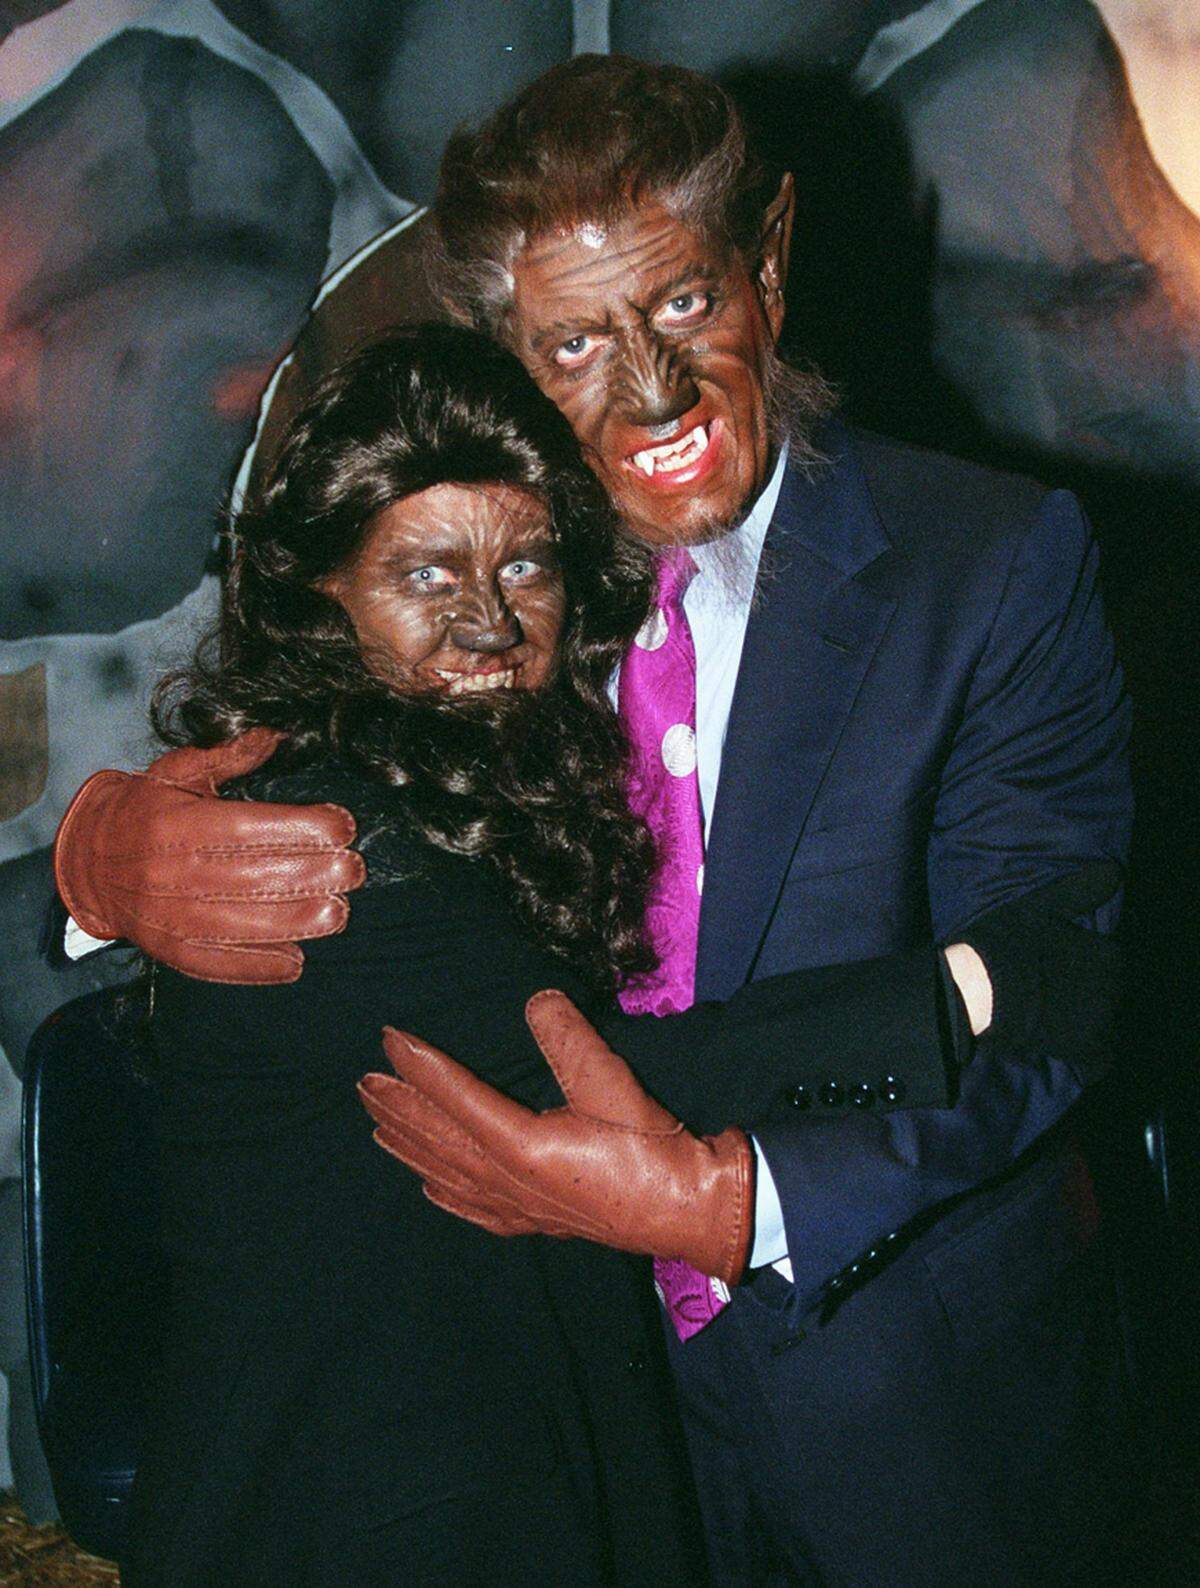 Der amerikanische Politiker Al Gore zeigte in der Vergangenheit als Vizepräsident von Amerika mit seiner Frau Tipper oftmals seine Lieb zu Halloween. 1997 als Werwölfe.